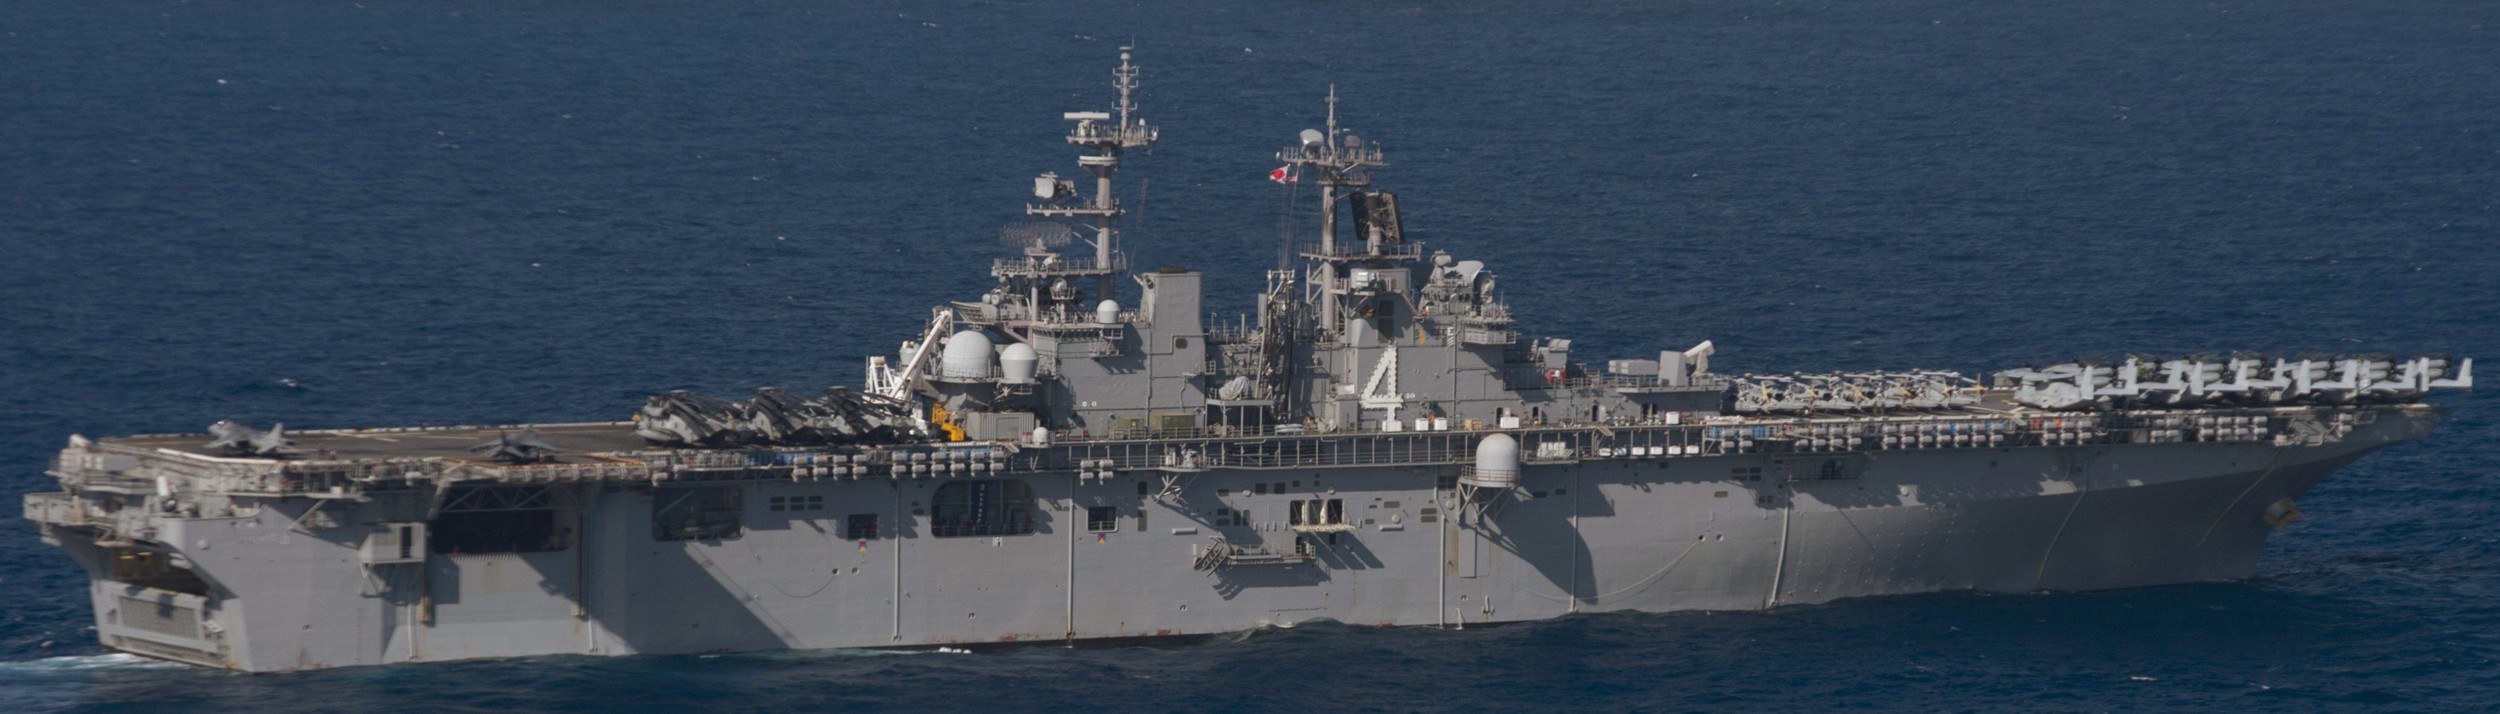 lhd-4 uss boxer wasp class amphibious assault ship dock landing us navy marines vmm-166(rein) 105